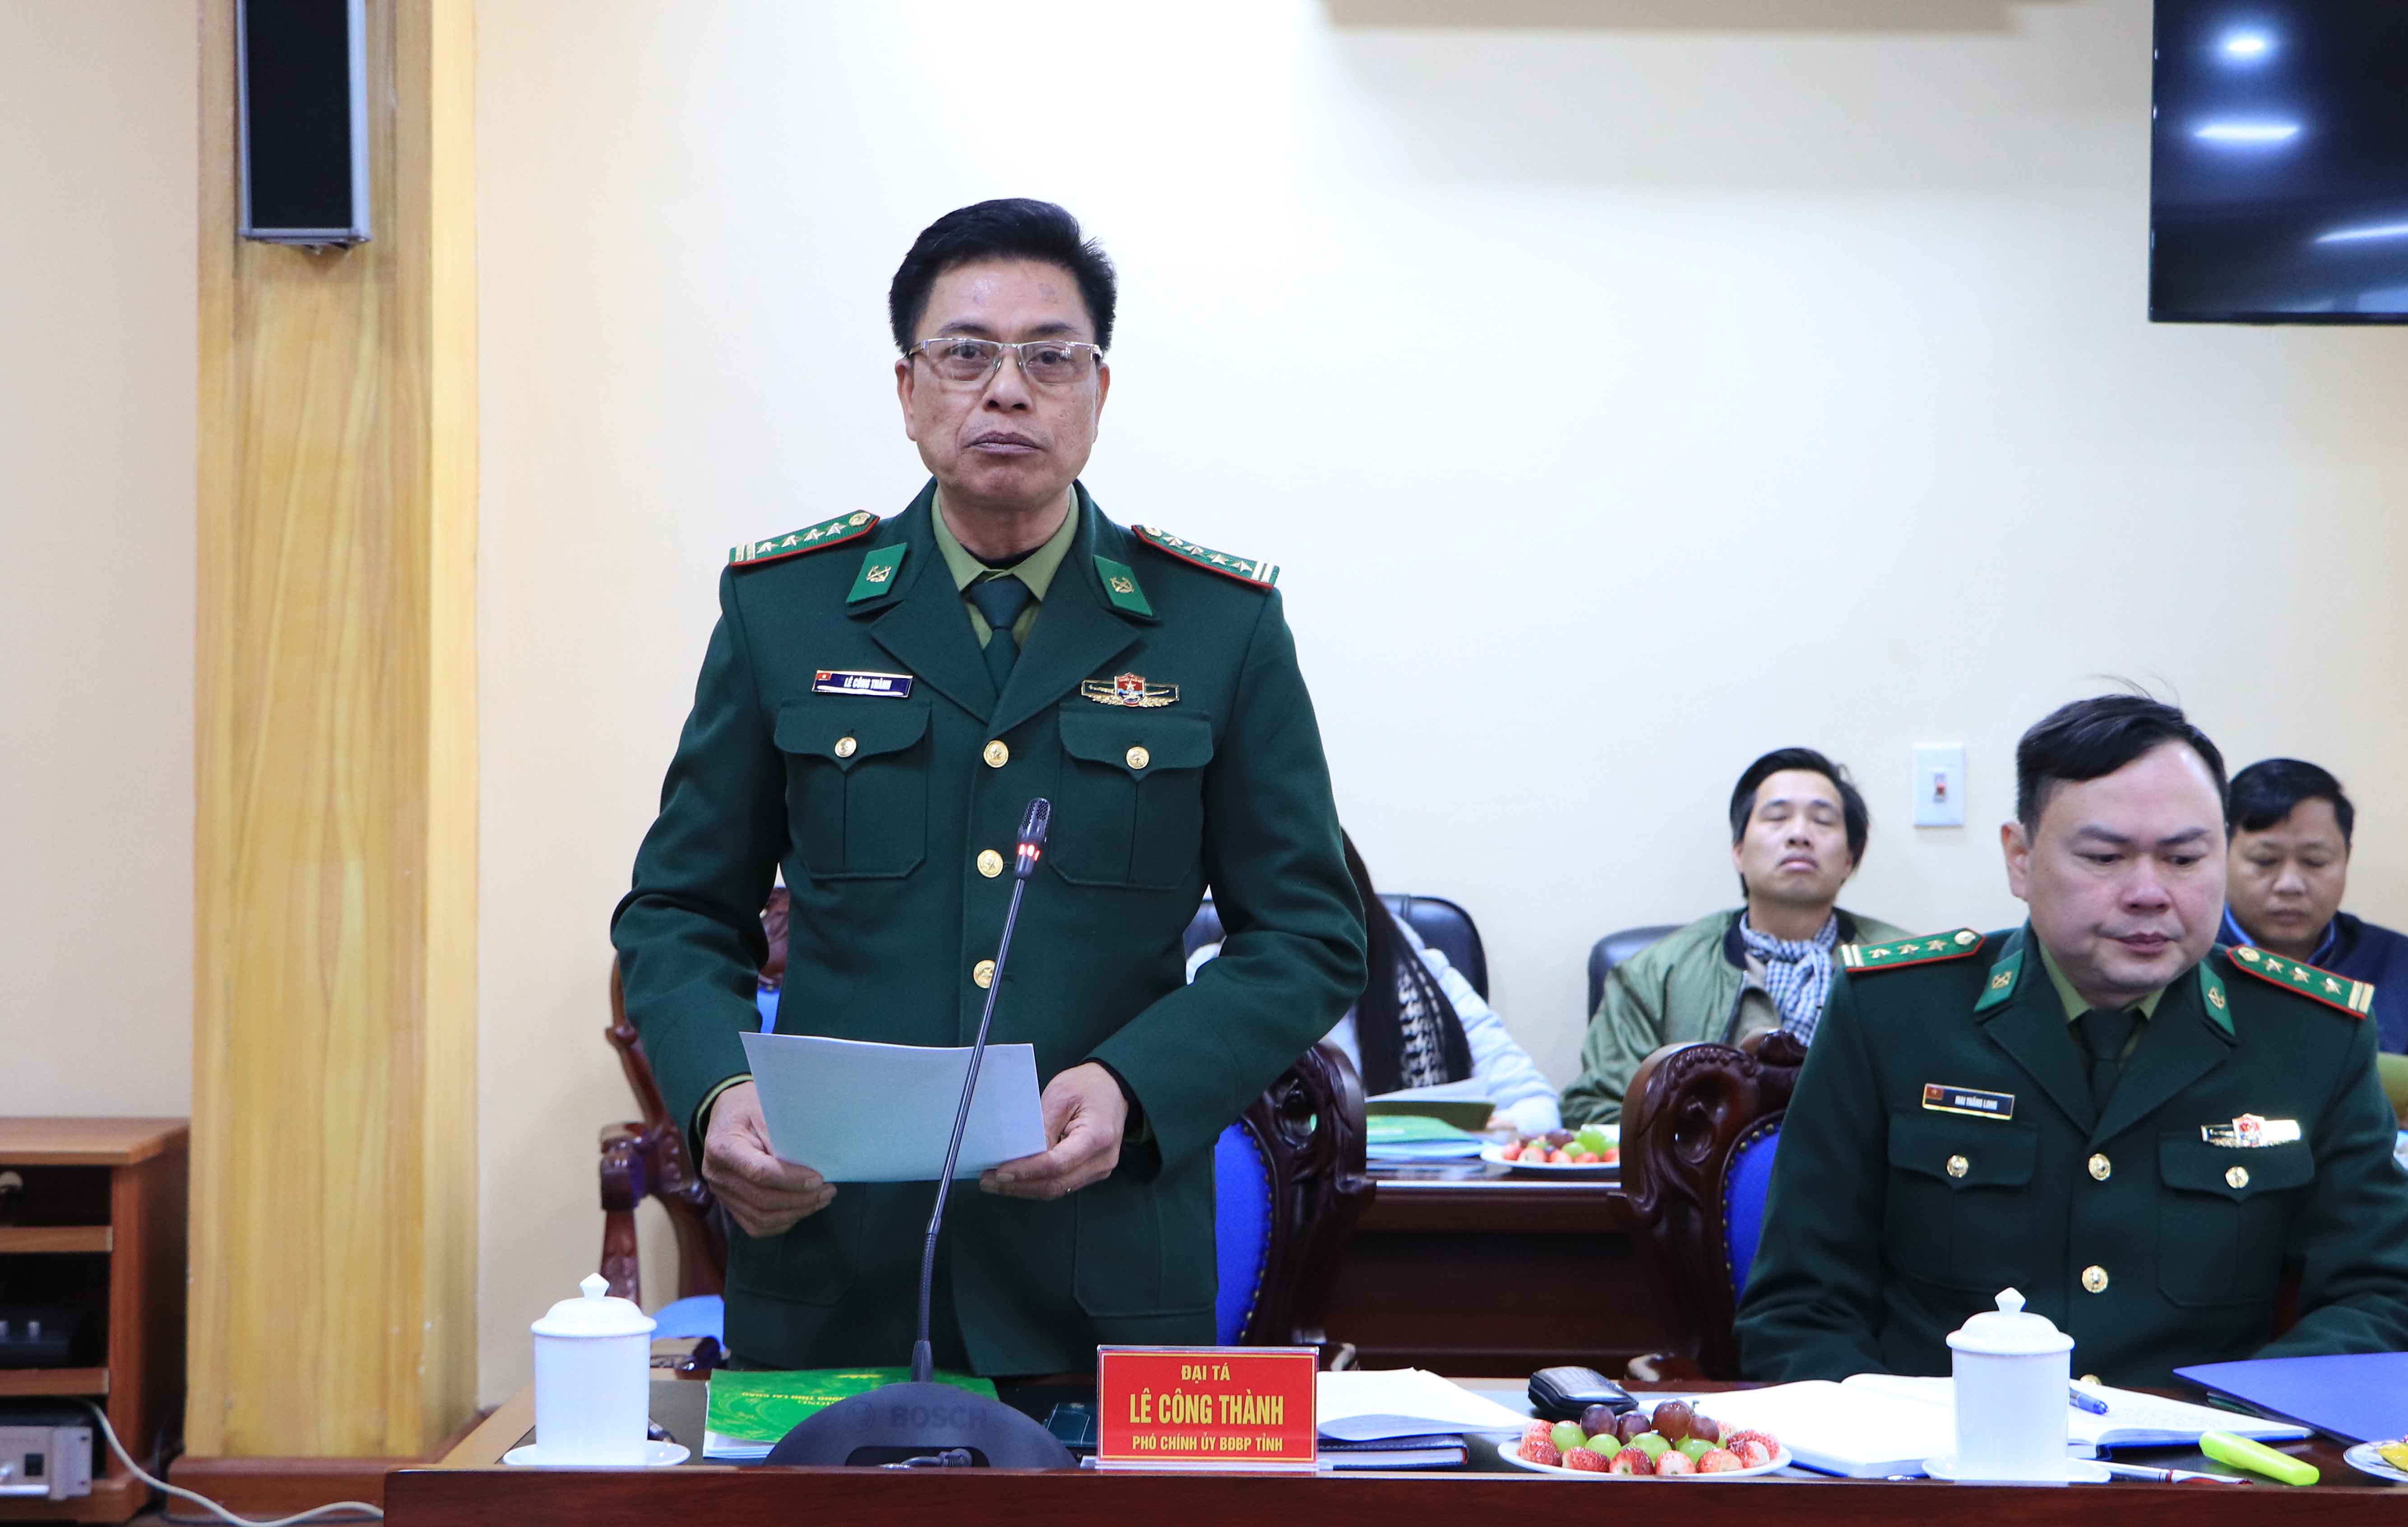 Đại tá Lê Công Thành – Phó Chính ủy Bộ Chỉ huy Bộ đội Biên phòng tỉnh thông tin kết quả công tác phối hợp tuyên truyền giữa Bộ Chỉ huy BĐBP tỉnh với các cơ quan thông tấn báo chí.